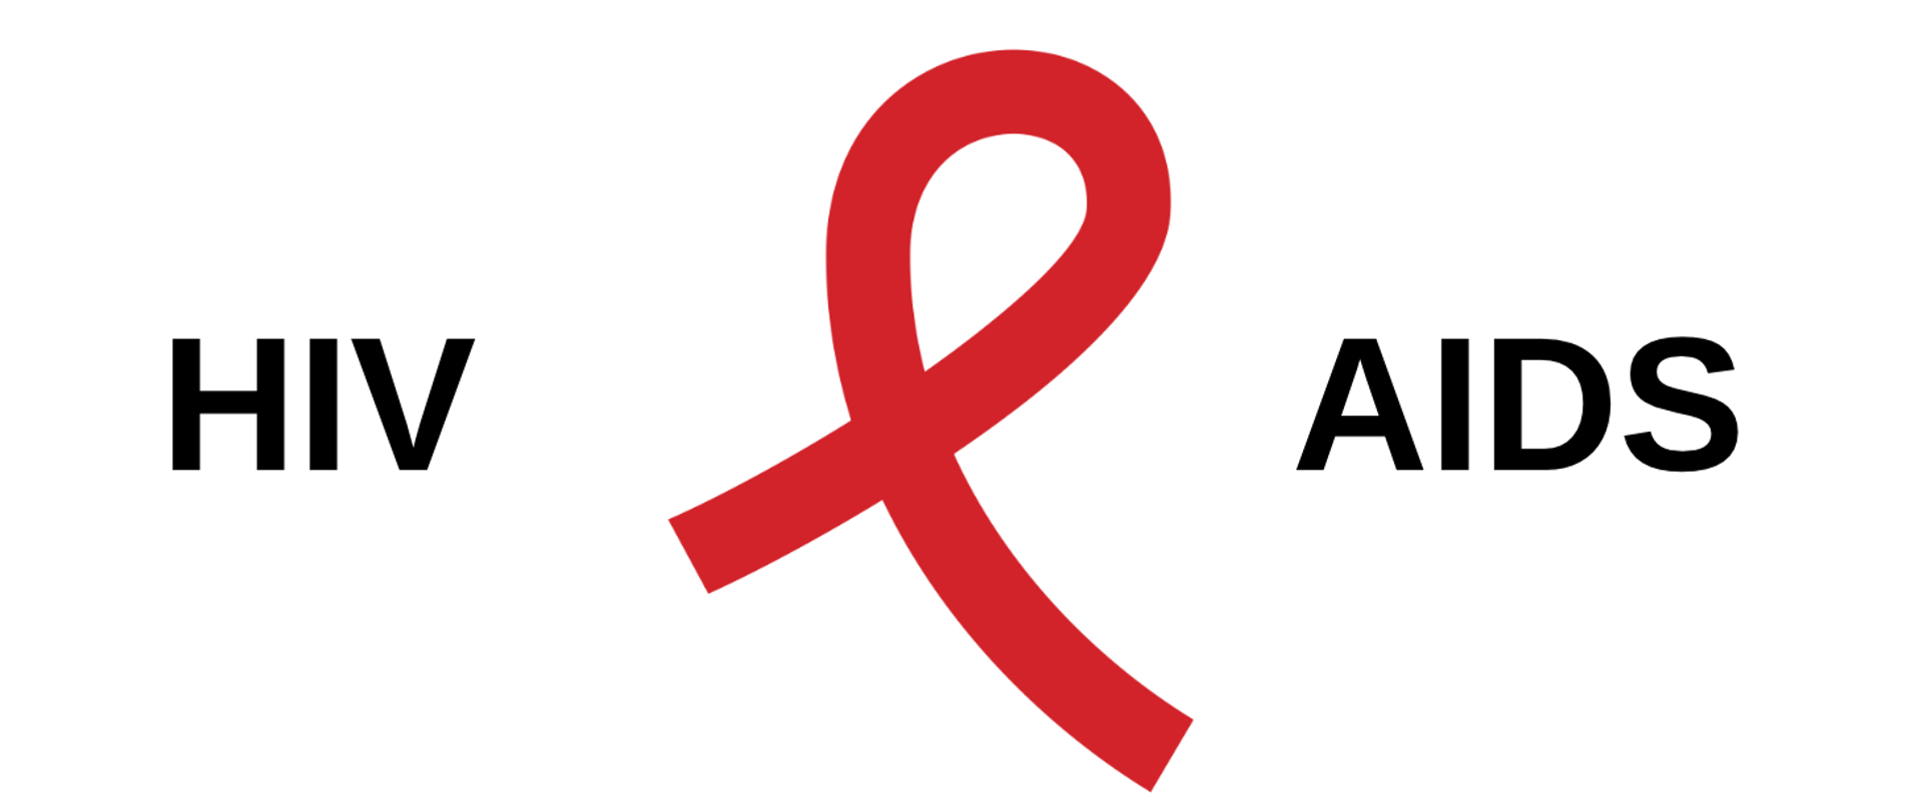 Grafika, na której widnieje napis HIV oraz AIDS. Między wyrazami znajduje się charakterystyczna czerwona wstążka. Tło jest koloru białego.